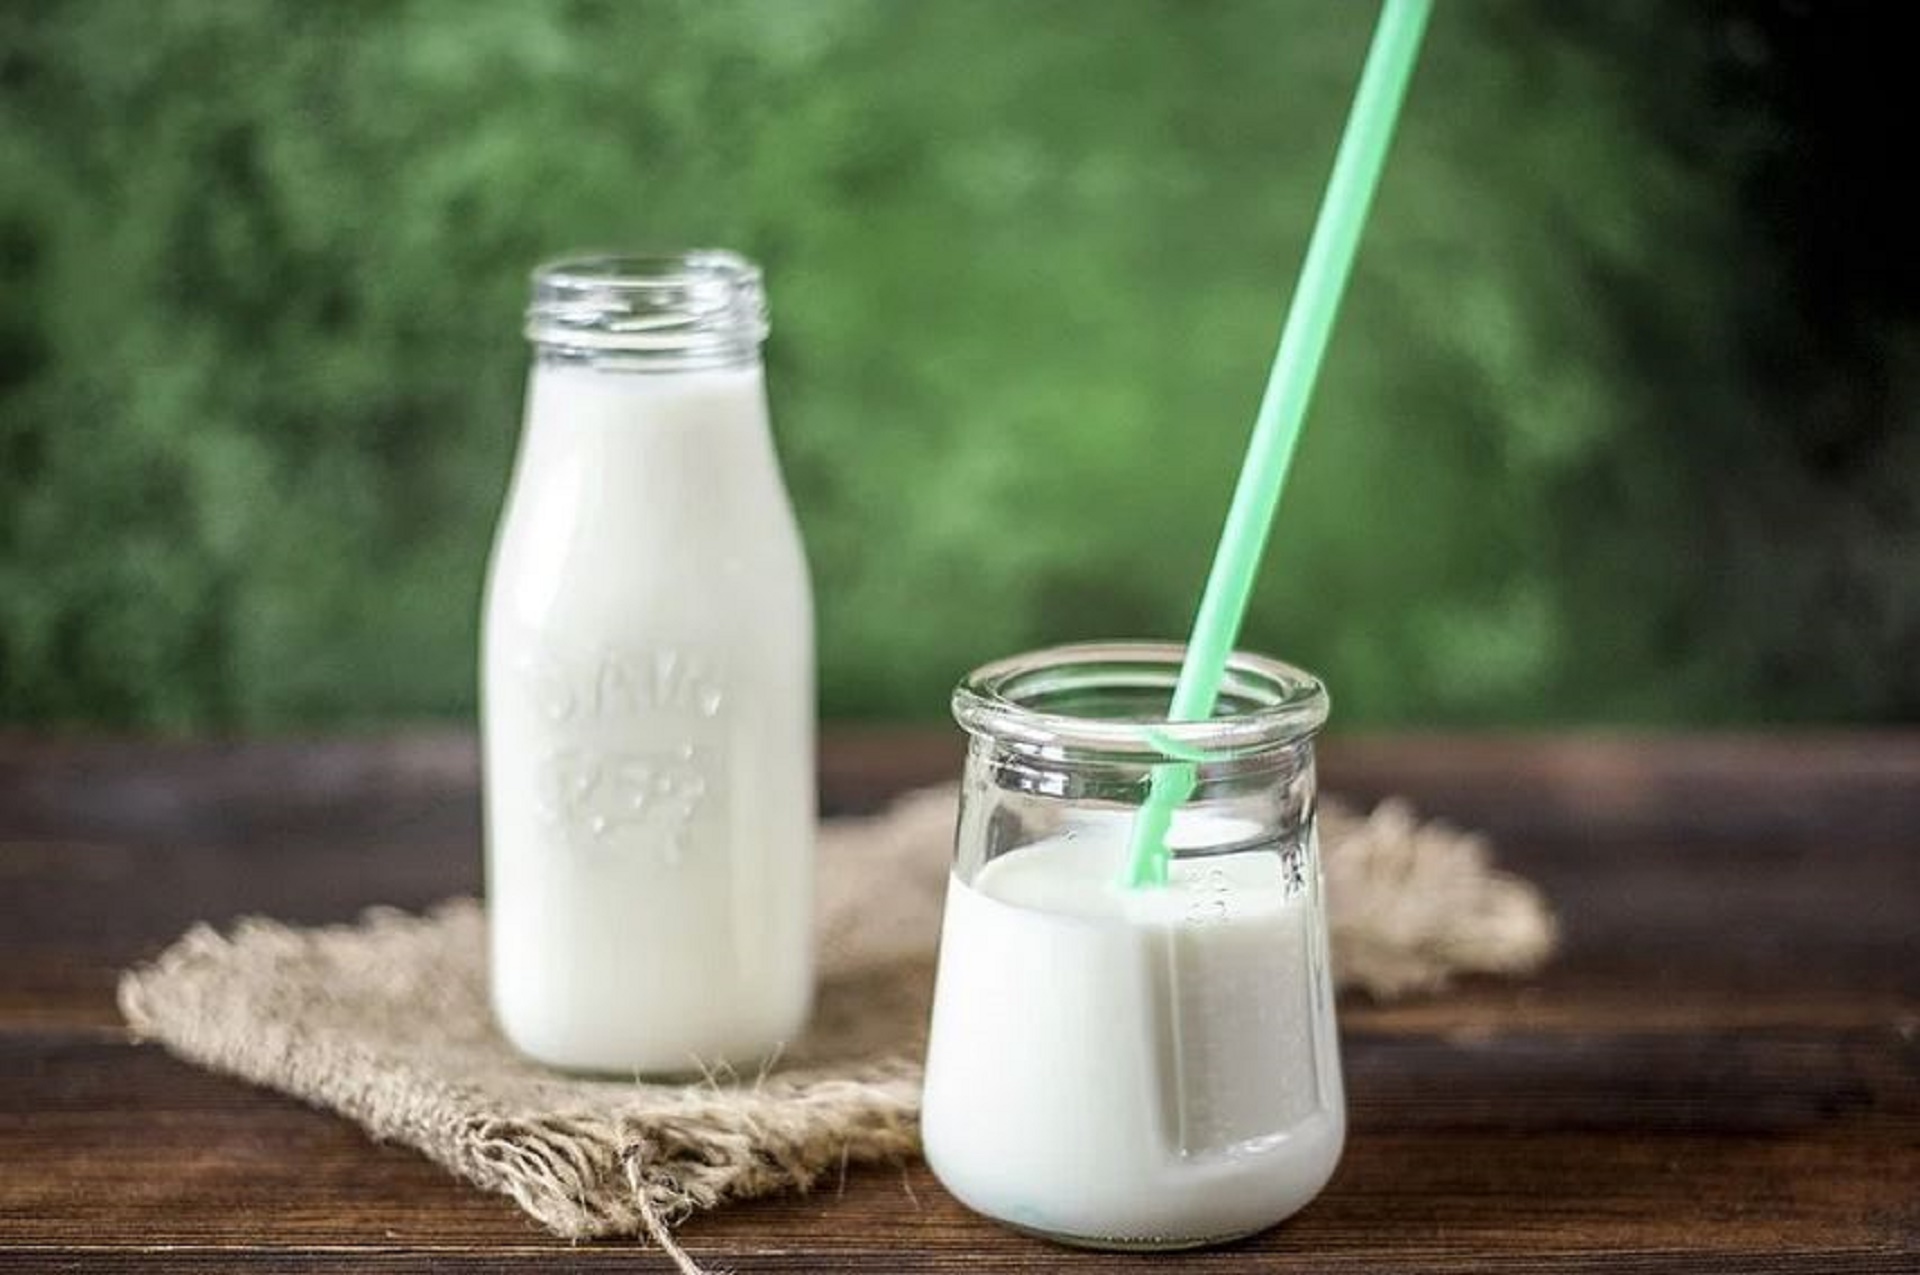 Le yaourt, une source de micro-organismes bons pour notre microbiote